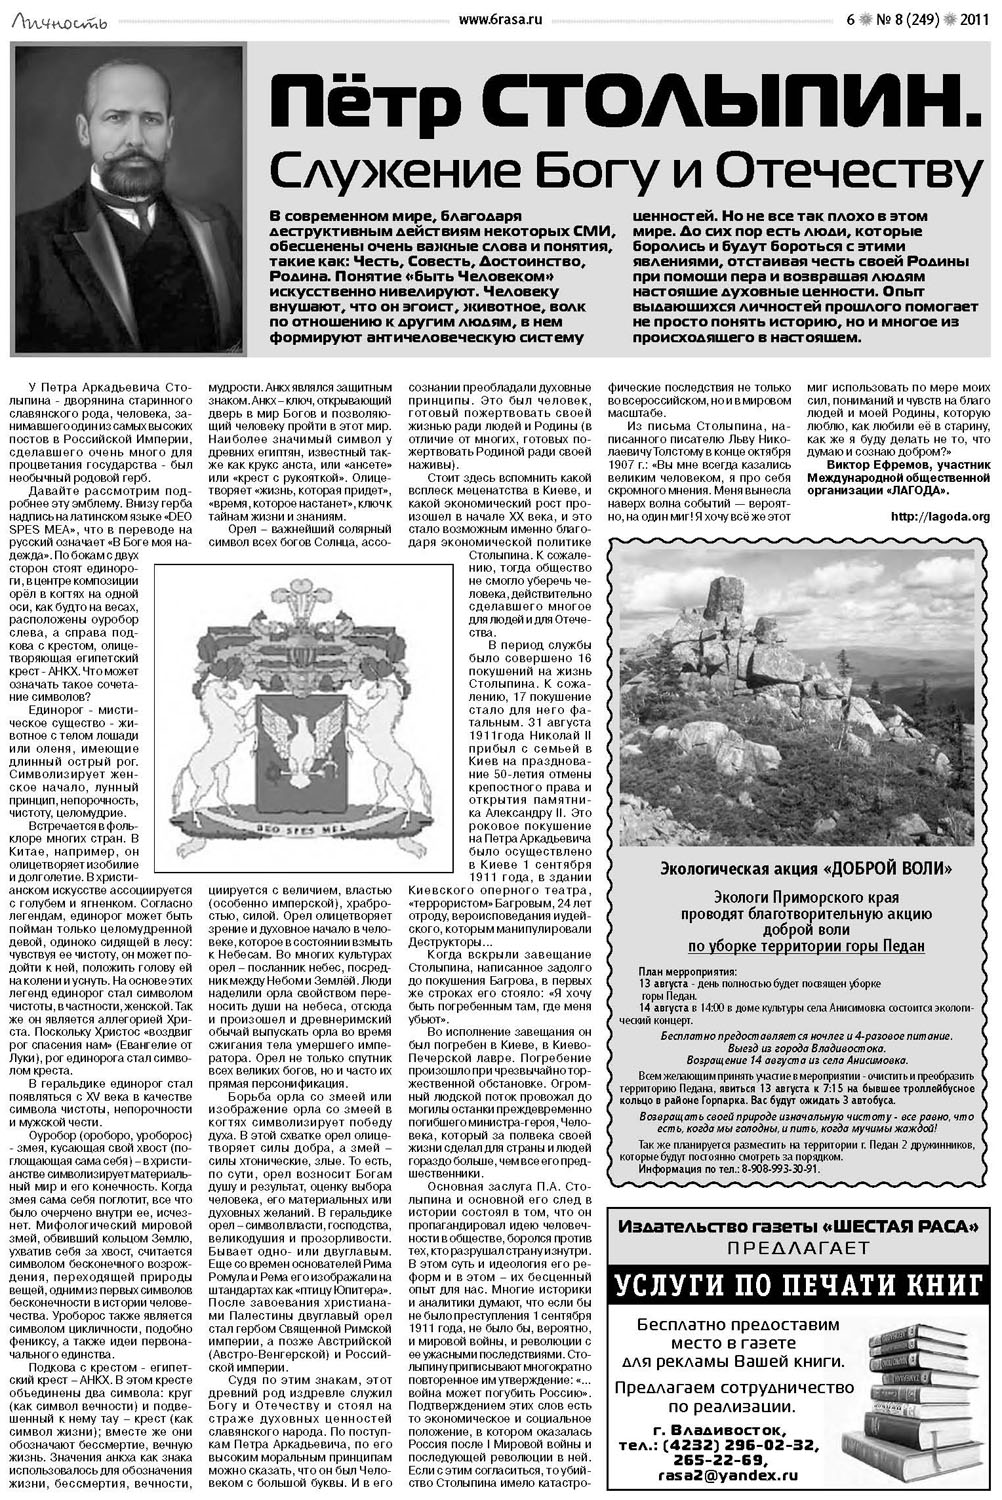 Опубликована статья: «Пётр Столыпин. Служение Богу и Отечеству»